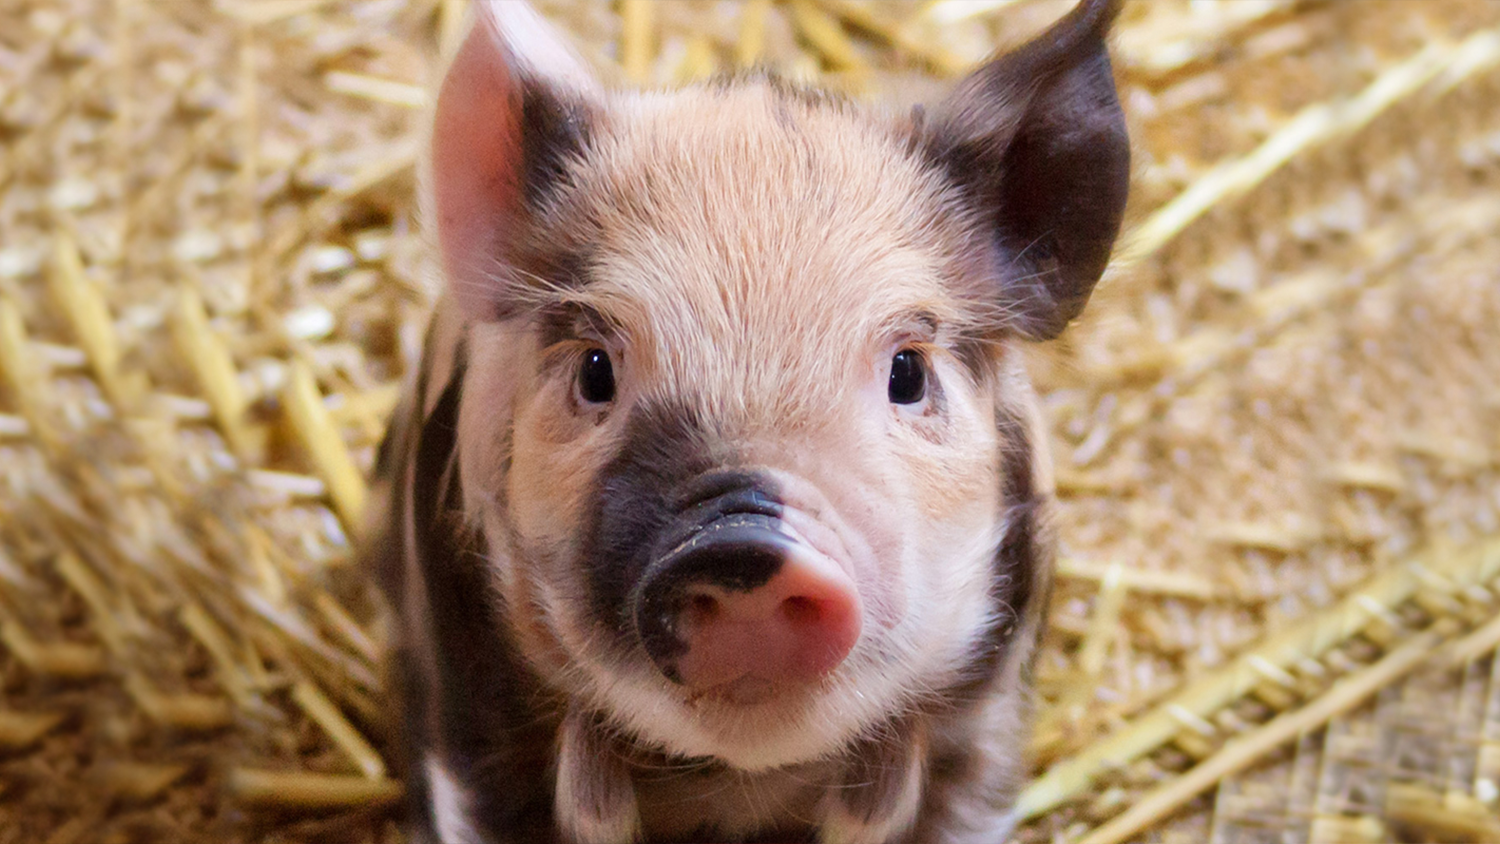 a little cute piglet